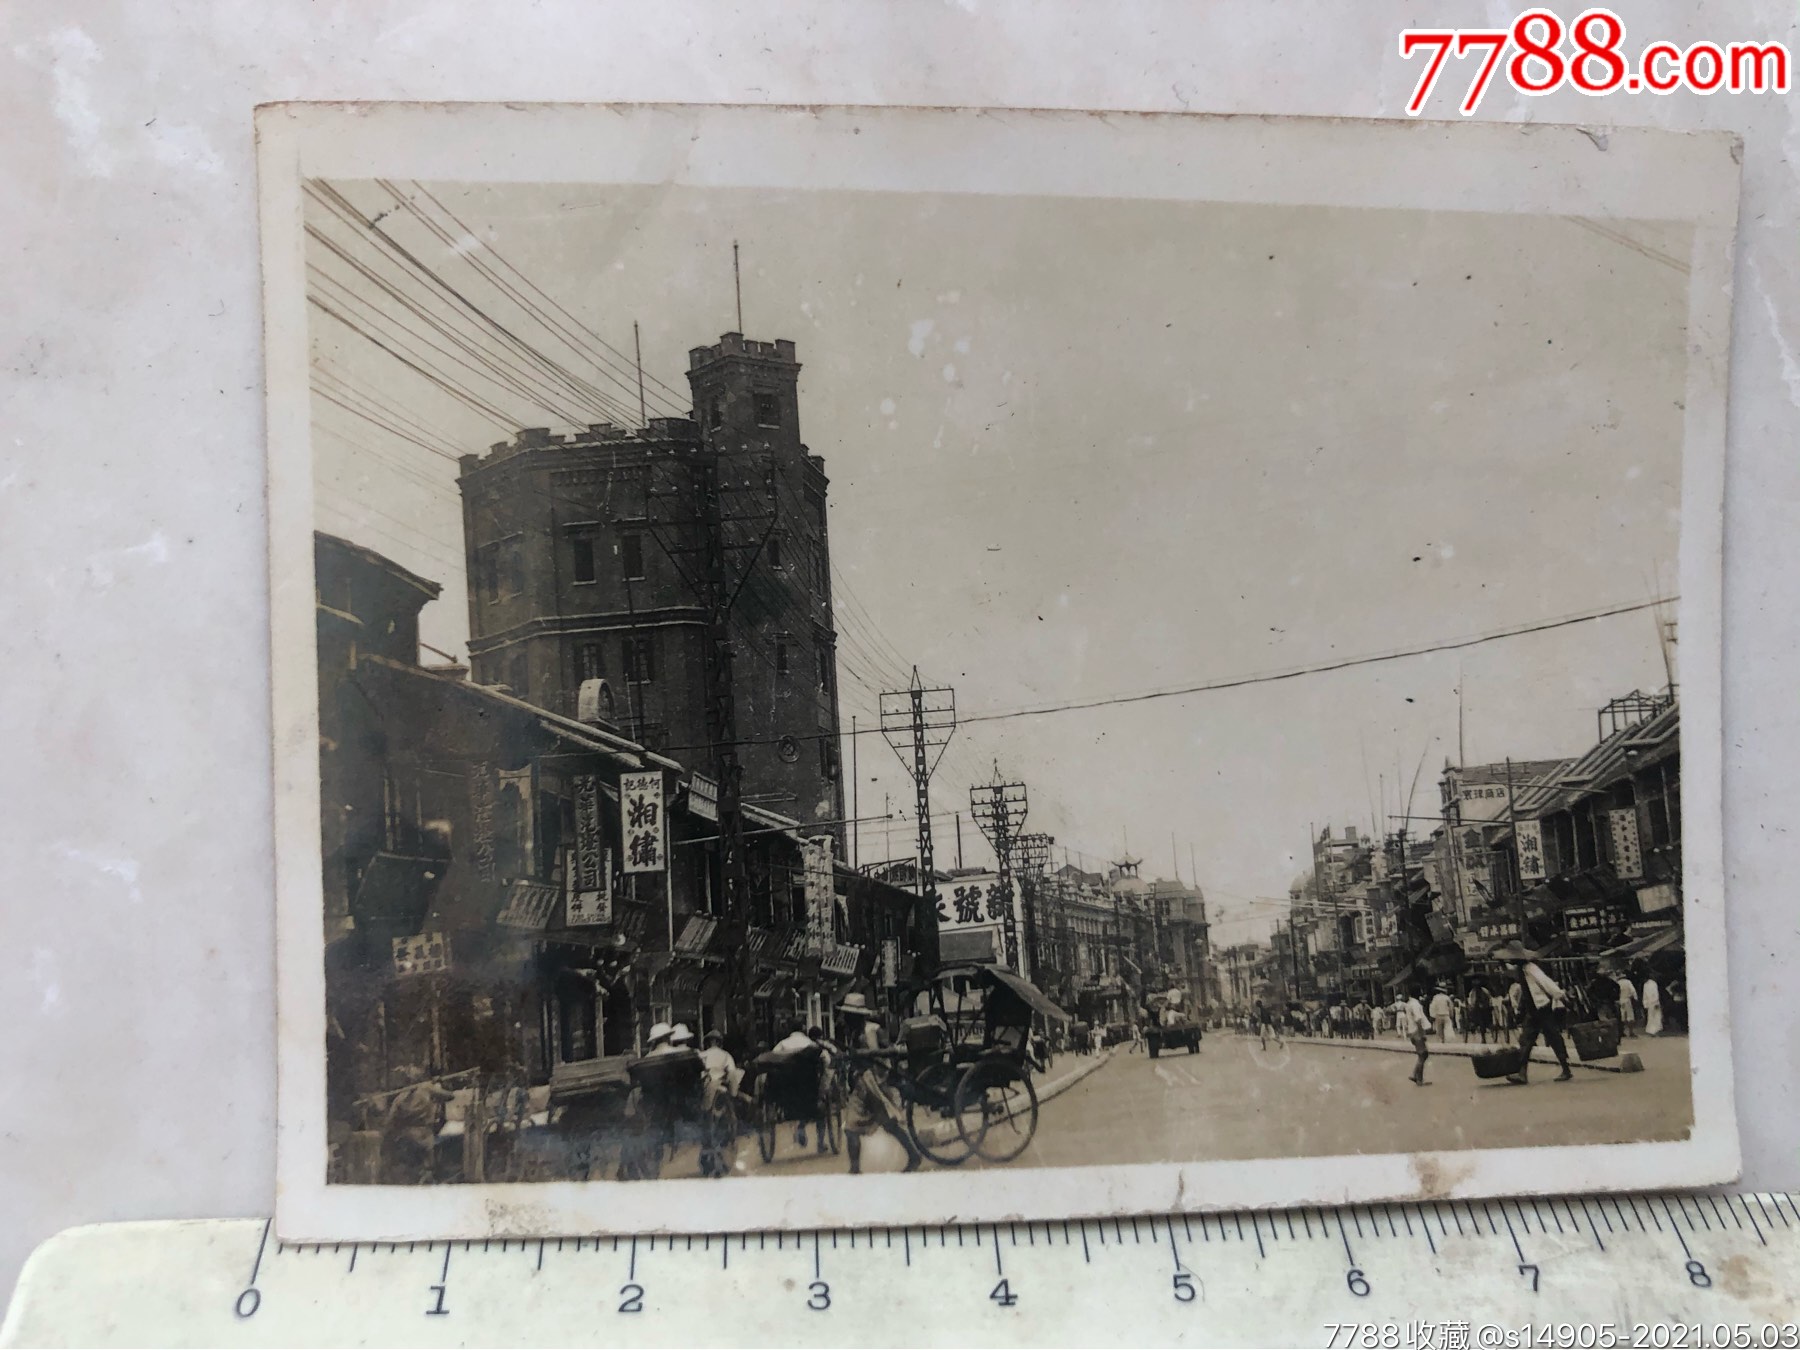 民国时期武汉汉口中山路六角水塔,商铺林立,热闹的街景老照片